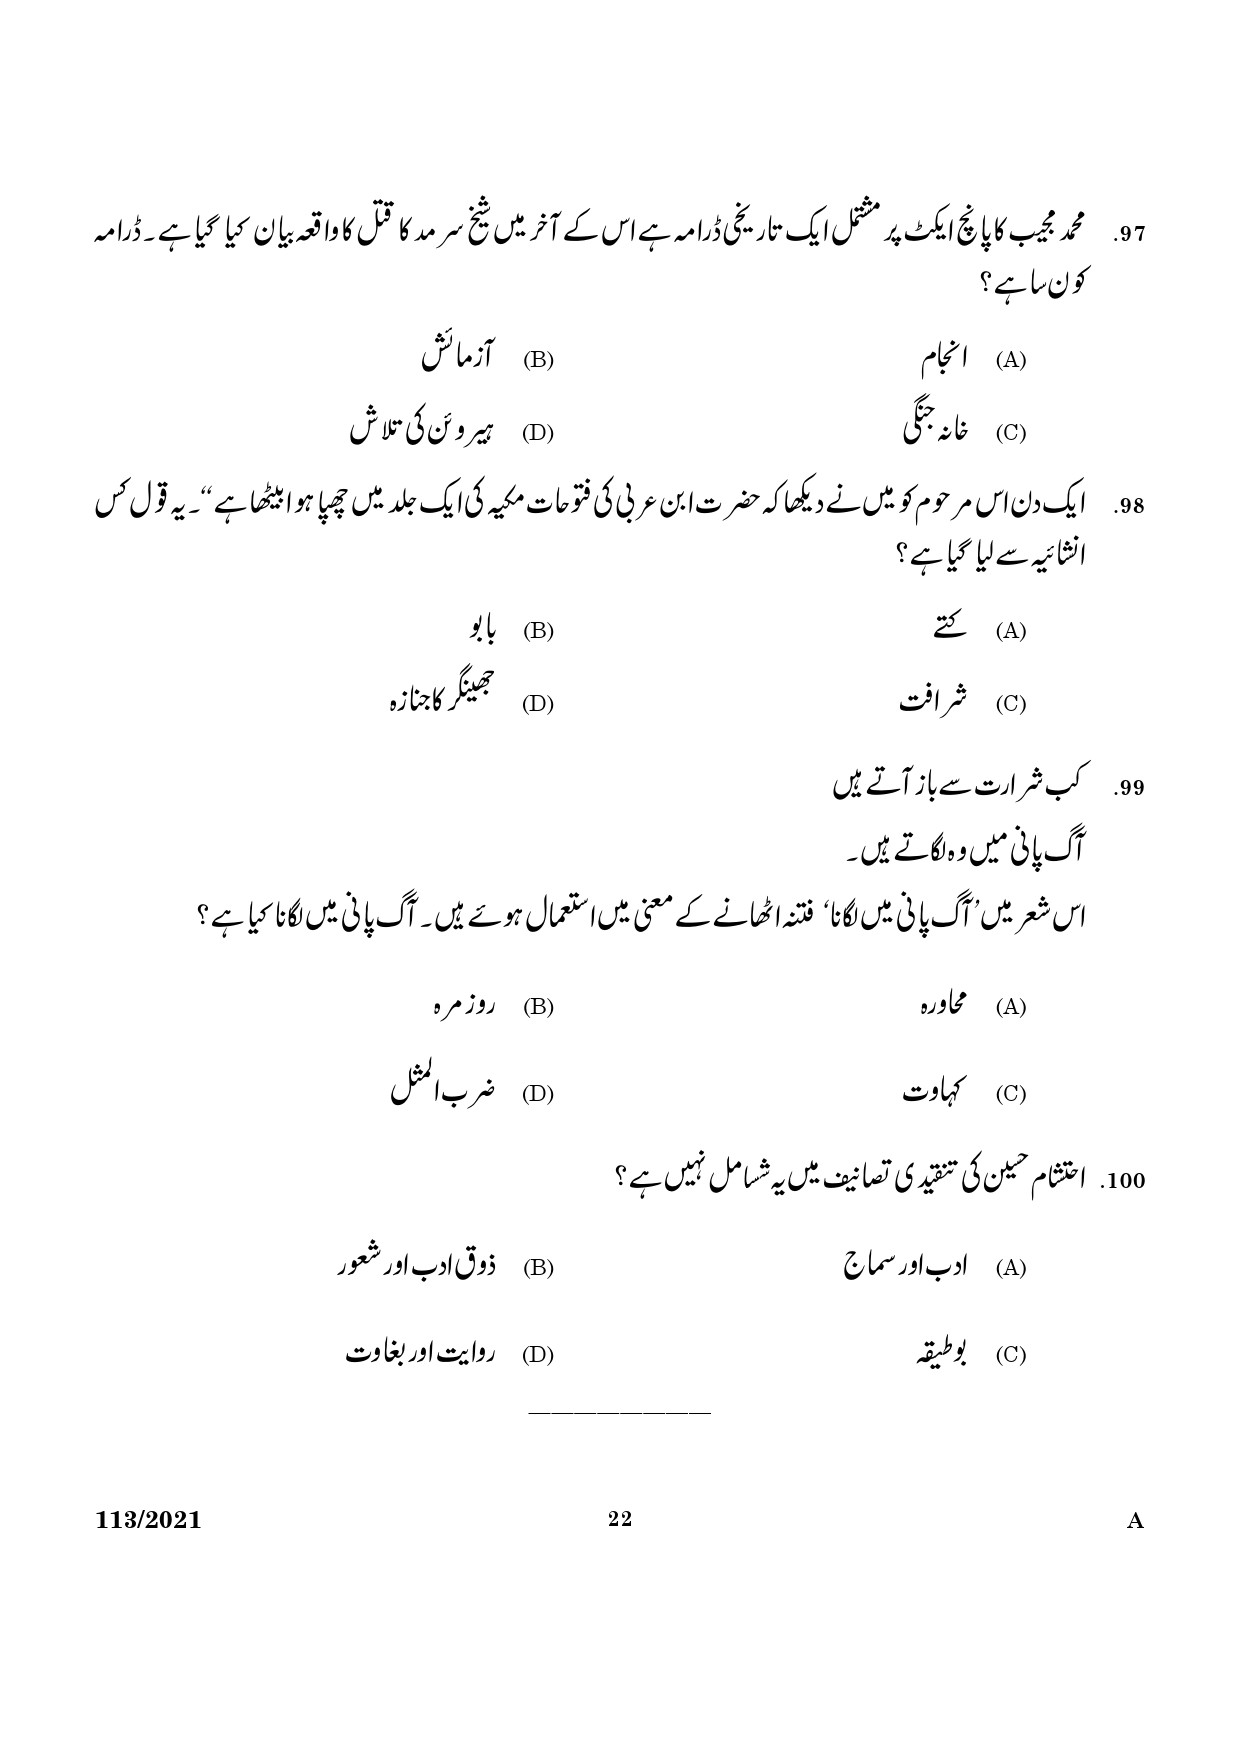 KPSC Part Time High School Assistant Urdu Exam 2021 Code 1132021 20